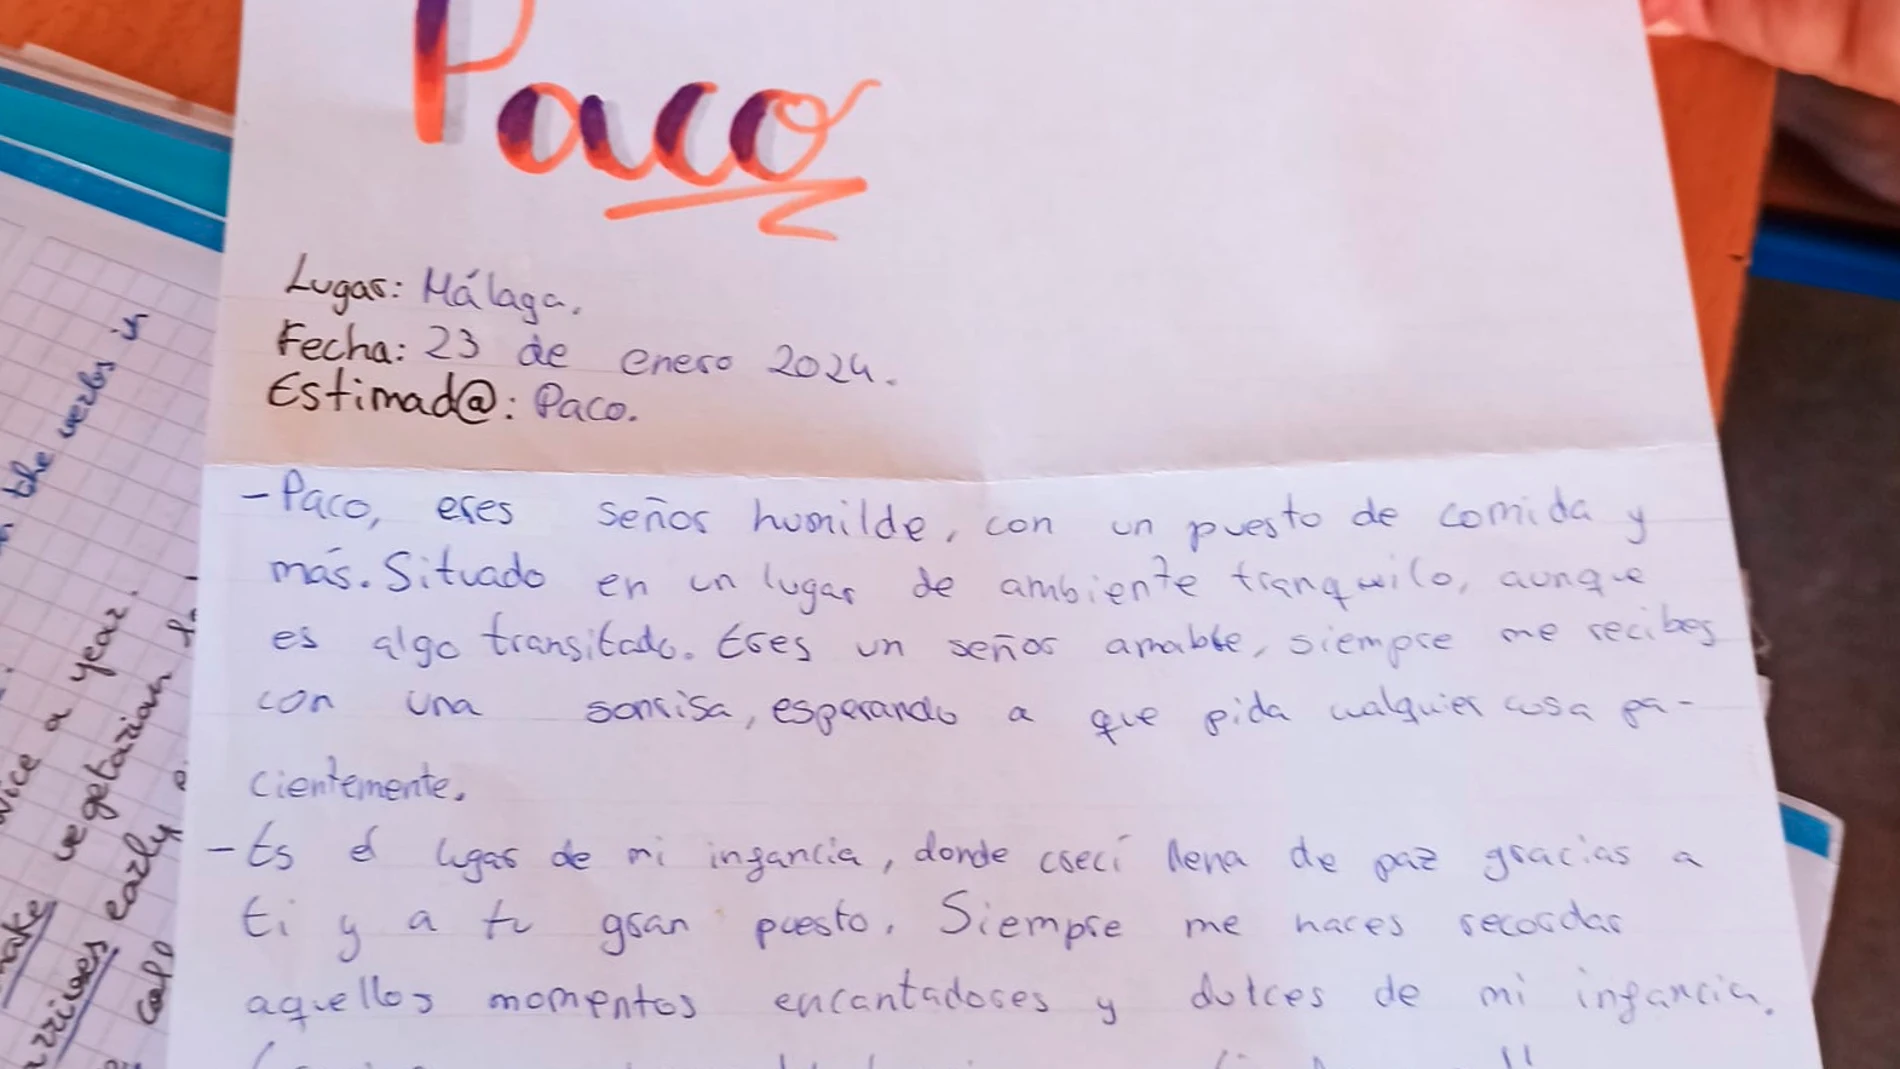 GRAFAND8394. MÁLAGA, 30/01/2024.-Paco, el veterano quiosquero de un barrio de Málaga, se emocionó al recibir la carta de un alumno del instituto cercano en la que le agradecía su aportación a la vecindad y su fomento a la cultura de paz, una sorpresa que también se han llevado el frutero y la enfermera escolar, entre otros protagonistas del día a día del barrio. EFE/IES Portada Alta//SOLO USO EDITORIAL/SOLO DISPONIBLE PARA ILUSTRAR LA NOTICIA QUE ACOMPAÑA (CRÉDITO OBLIGATORIO)//